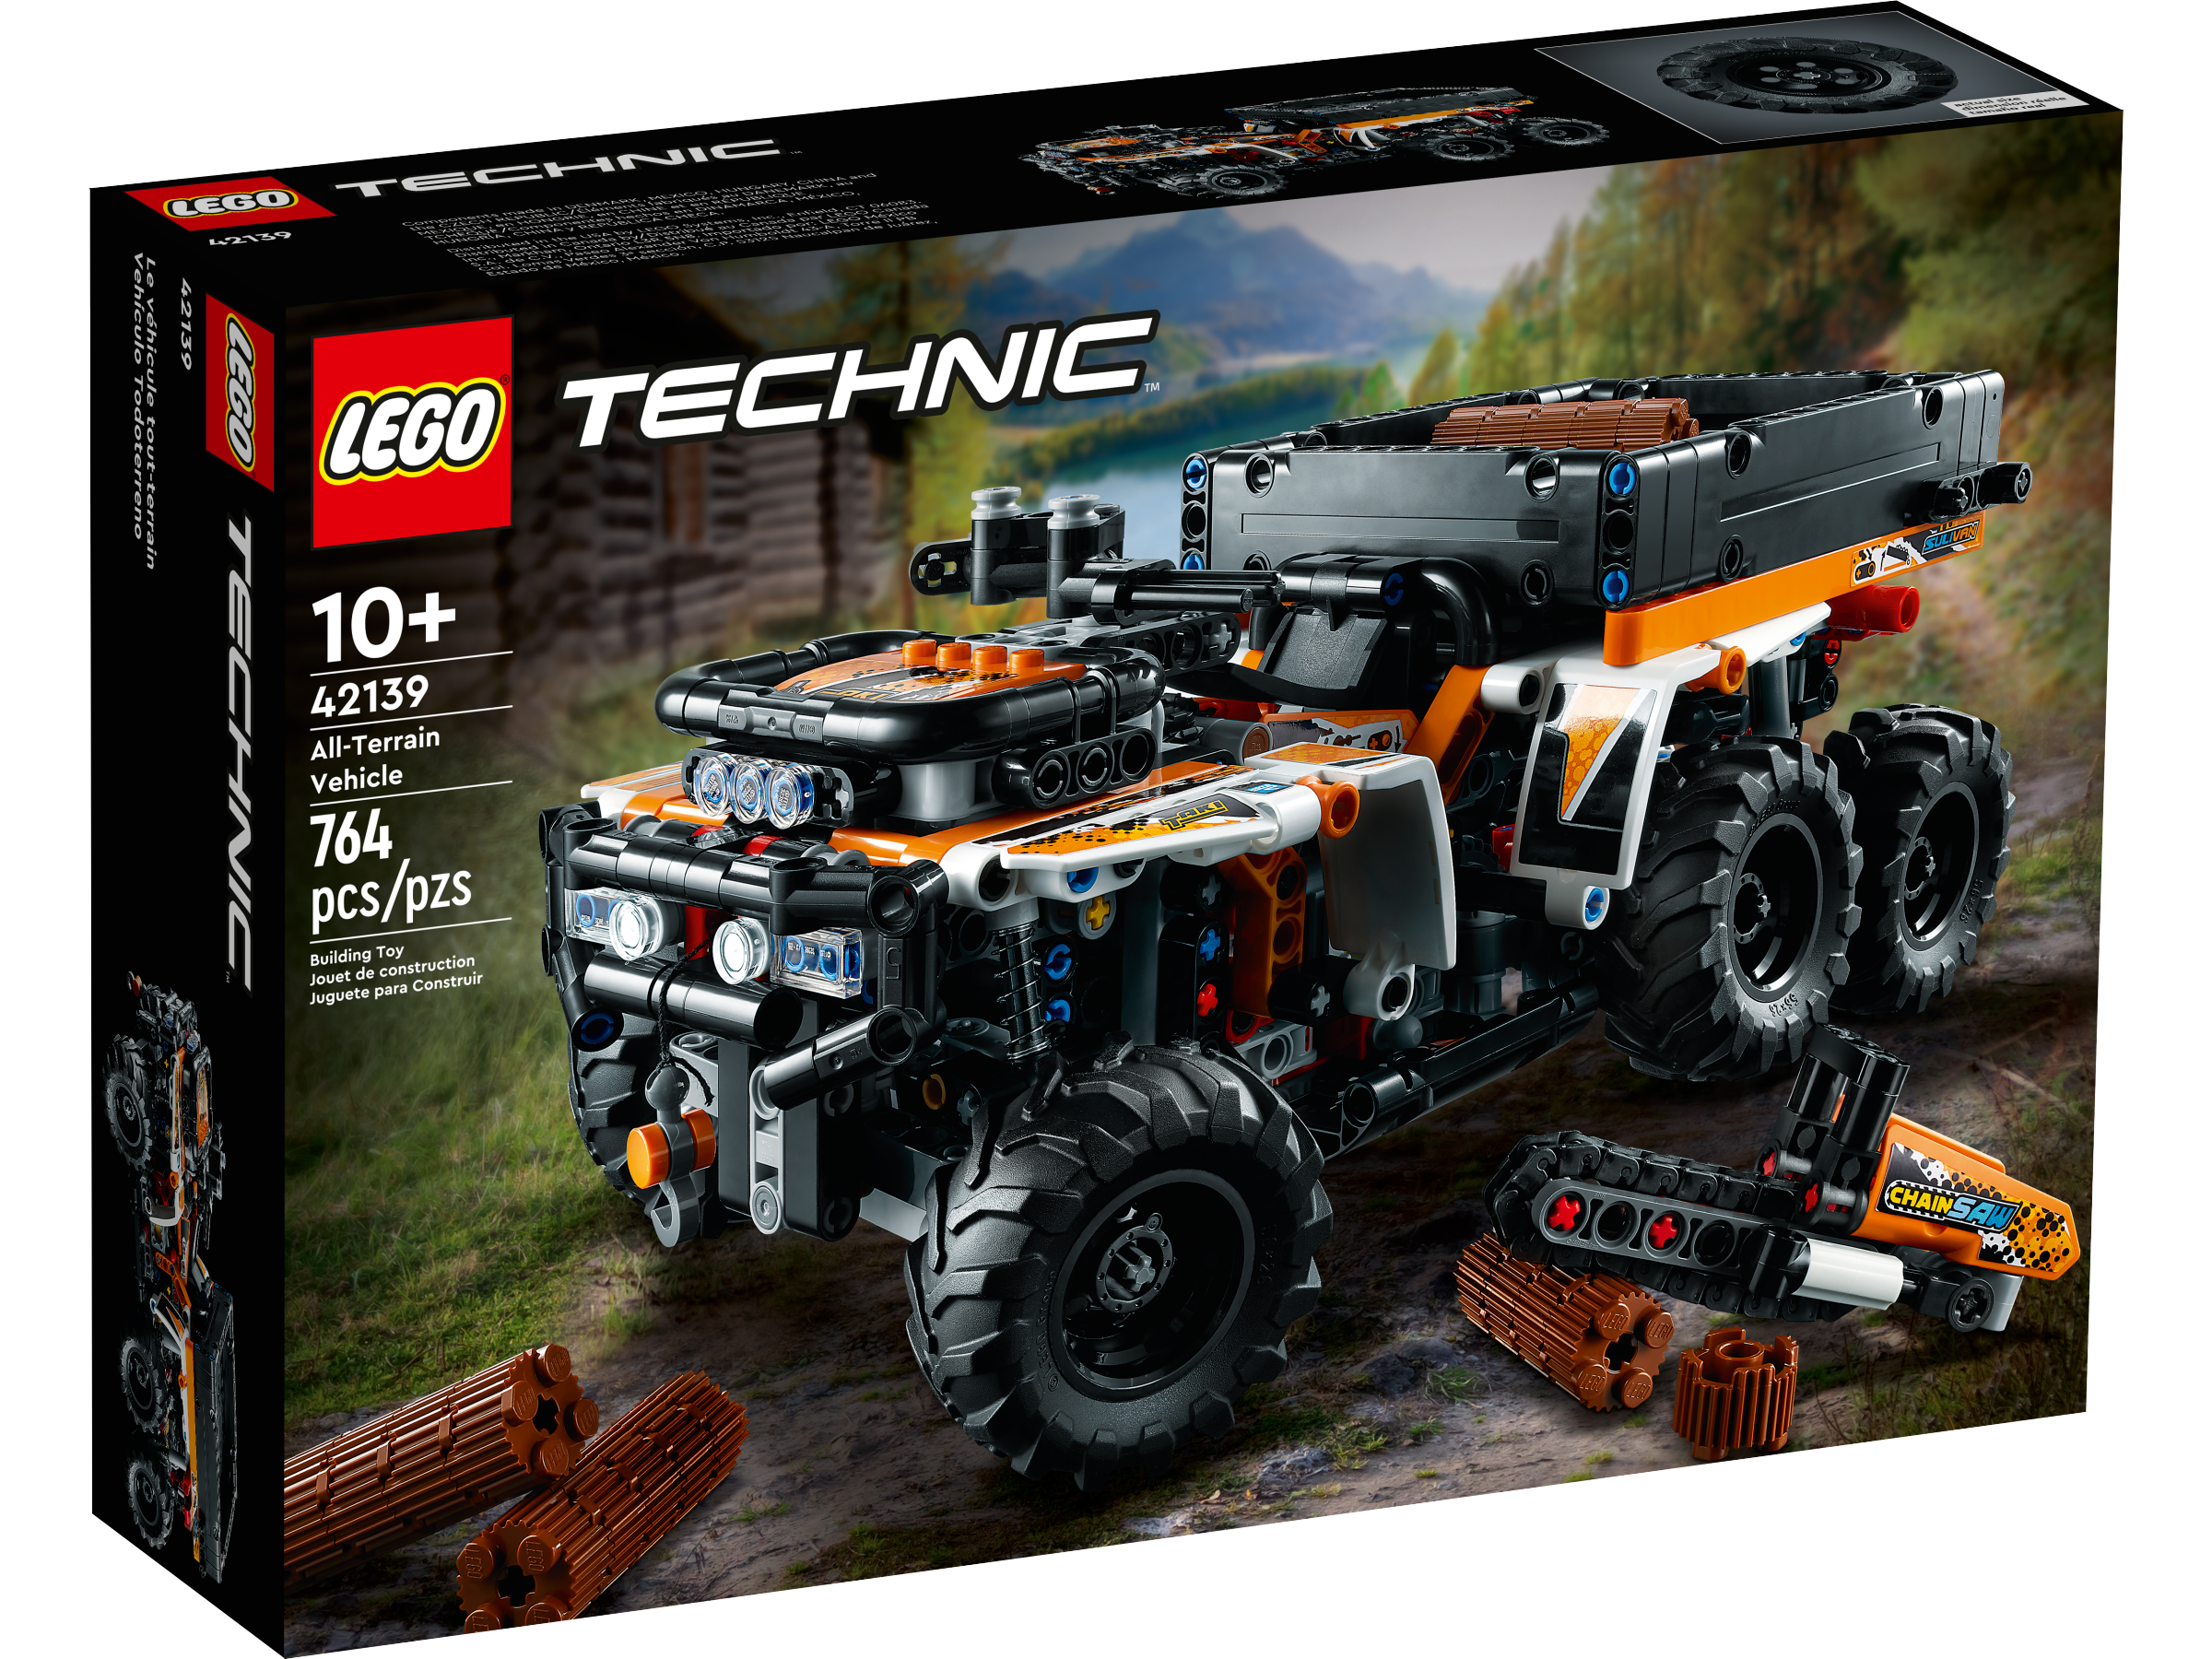 Coche de 6 Ruedas de Juguete Idea de Regalo de Cumpleaños LEGO 42139 Technic Vehículo Todoterreno Juego de Construcción para Niños de 10 Años 